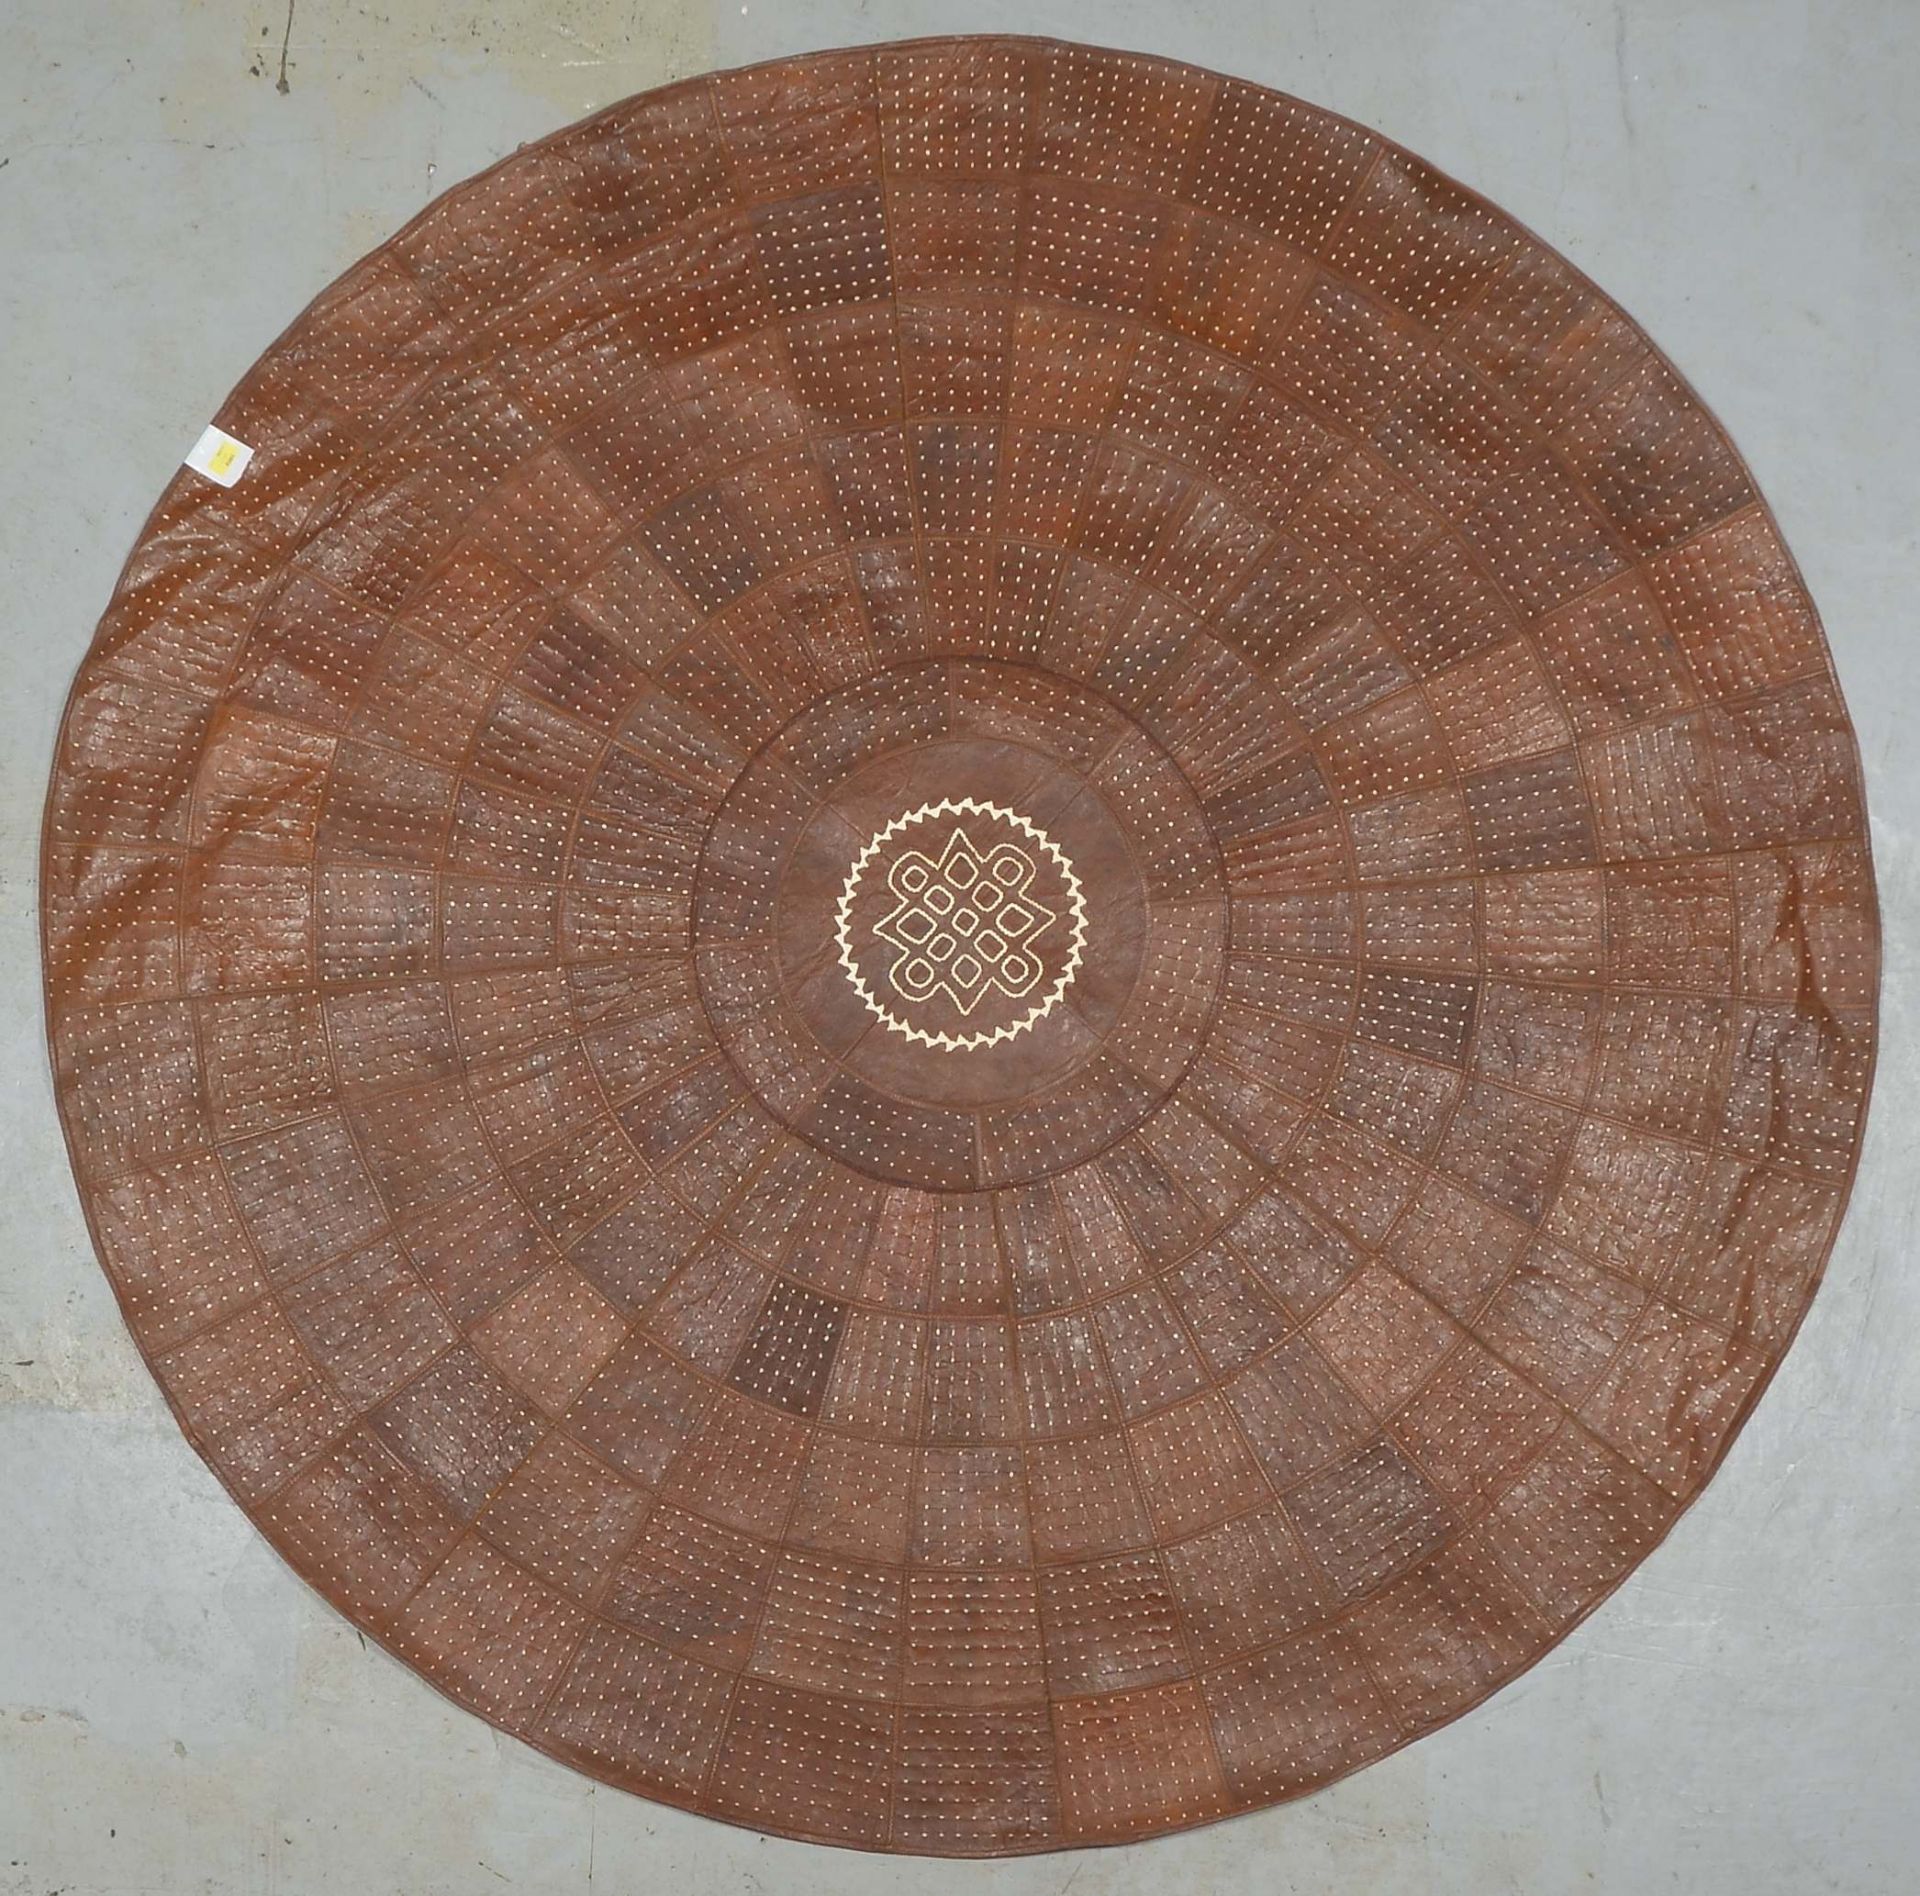 Runder Lederteppich (Afrika), runde Form, gen&auml;ht, Patchwork in verschiedenen Farben/Musterungen